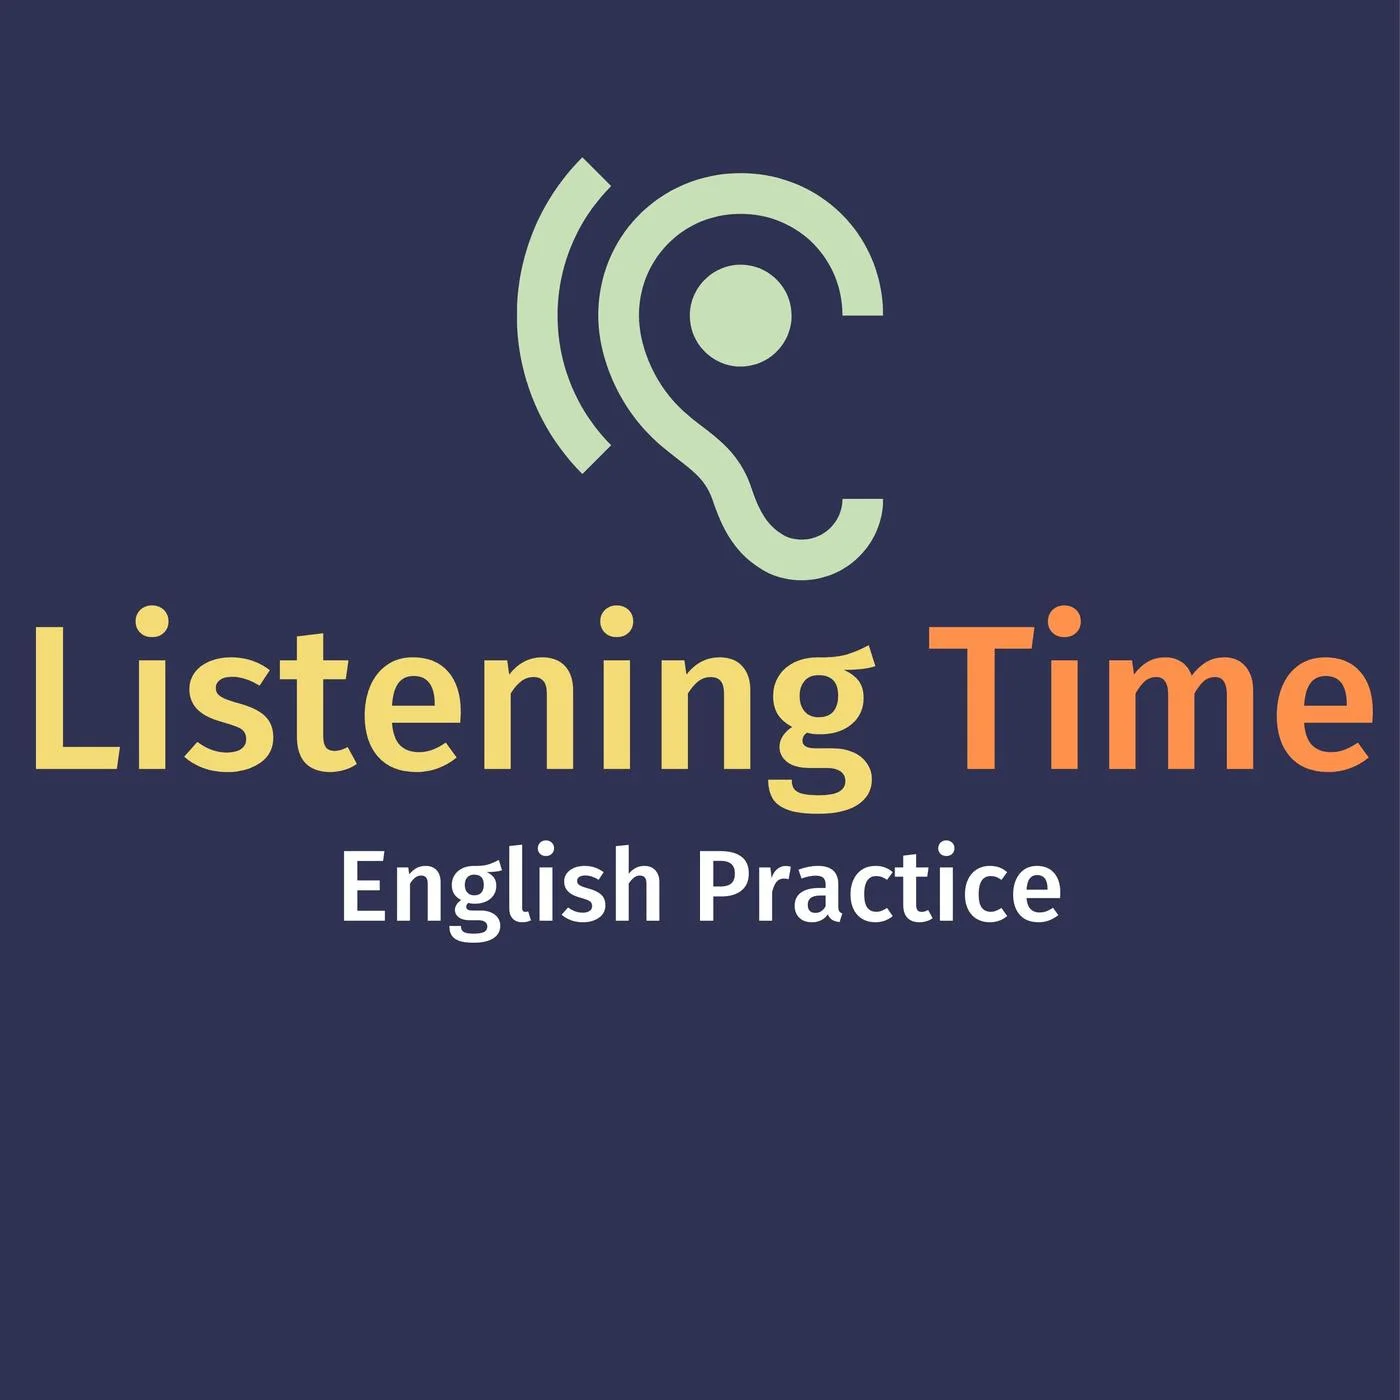 بهترین سایت برای تمرین Listening زبان